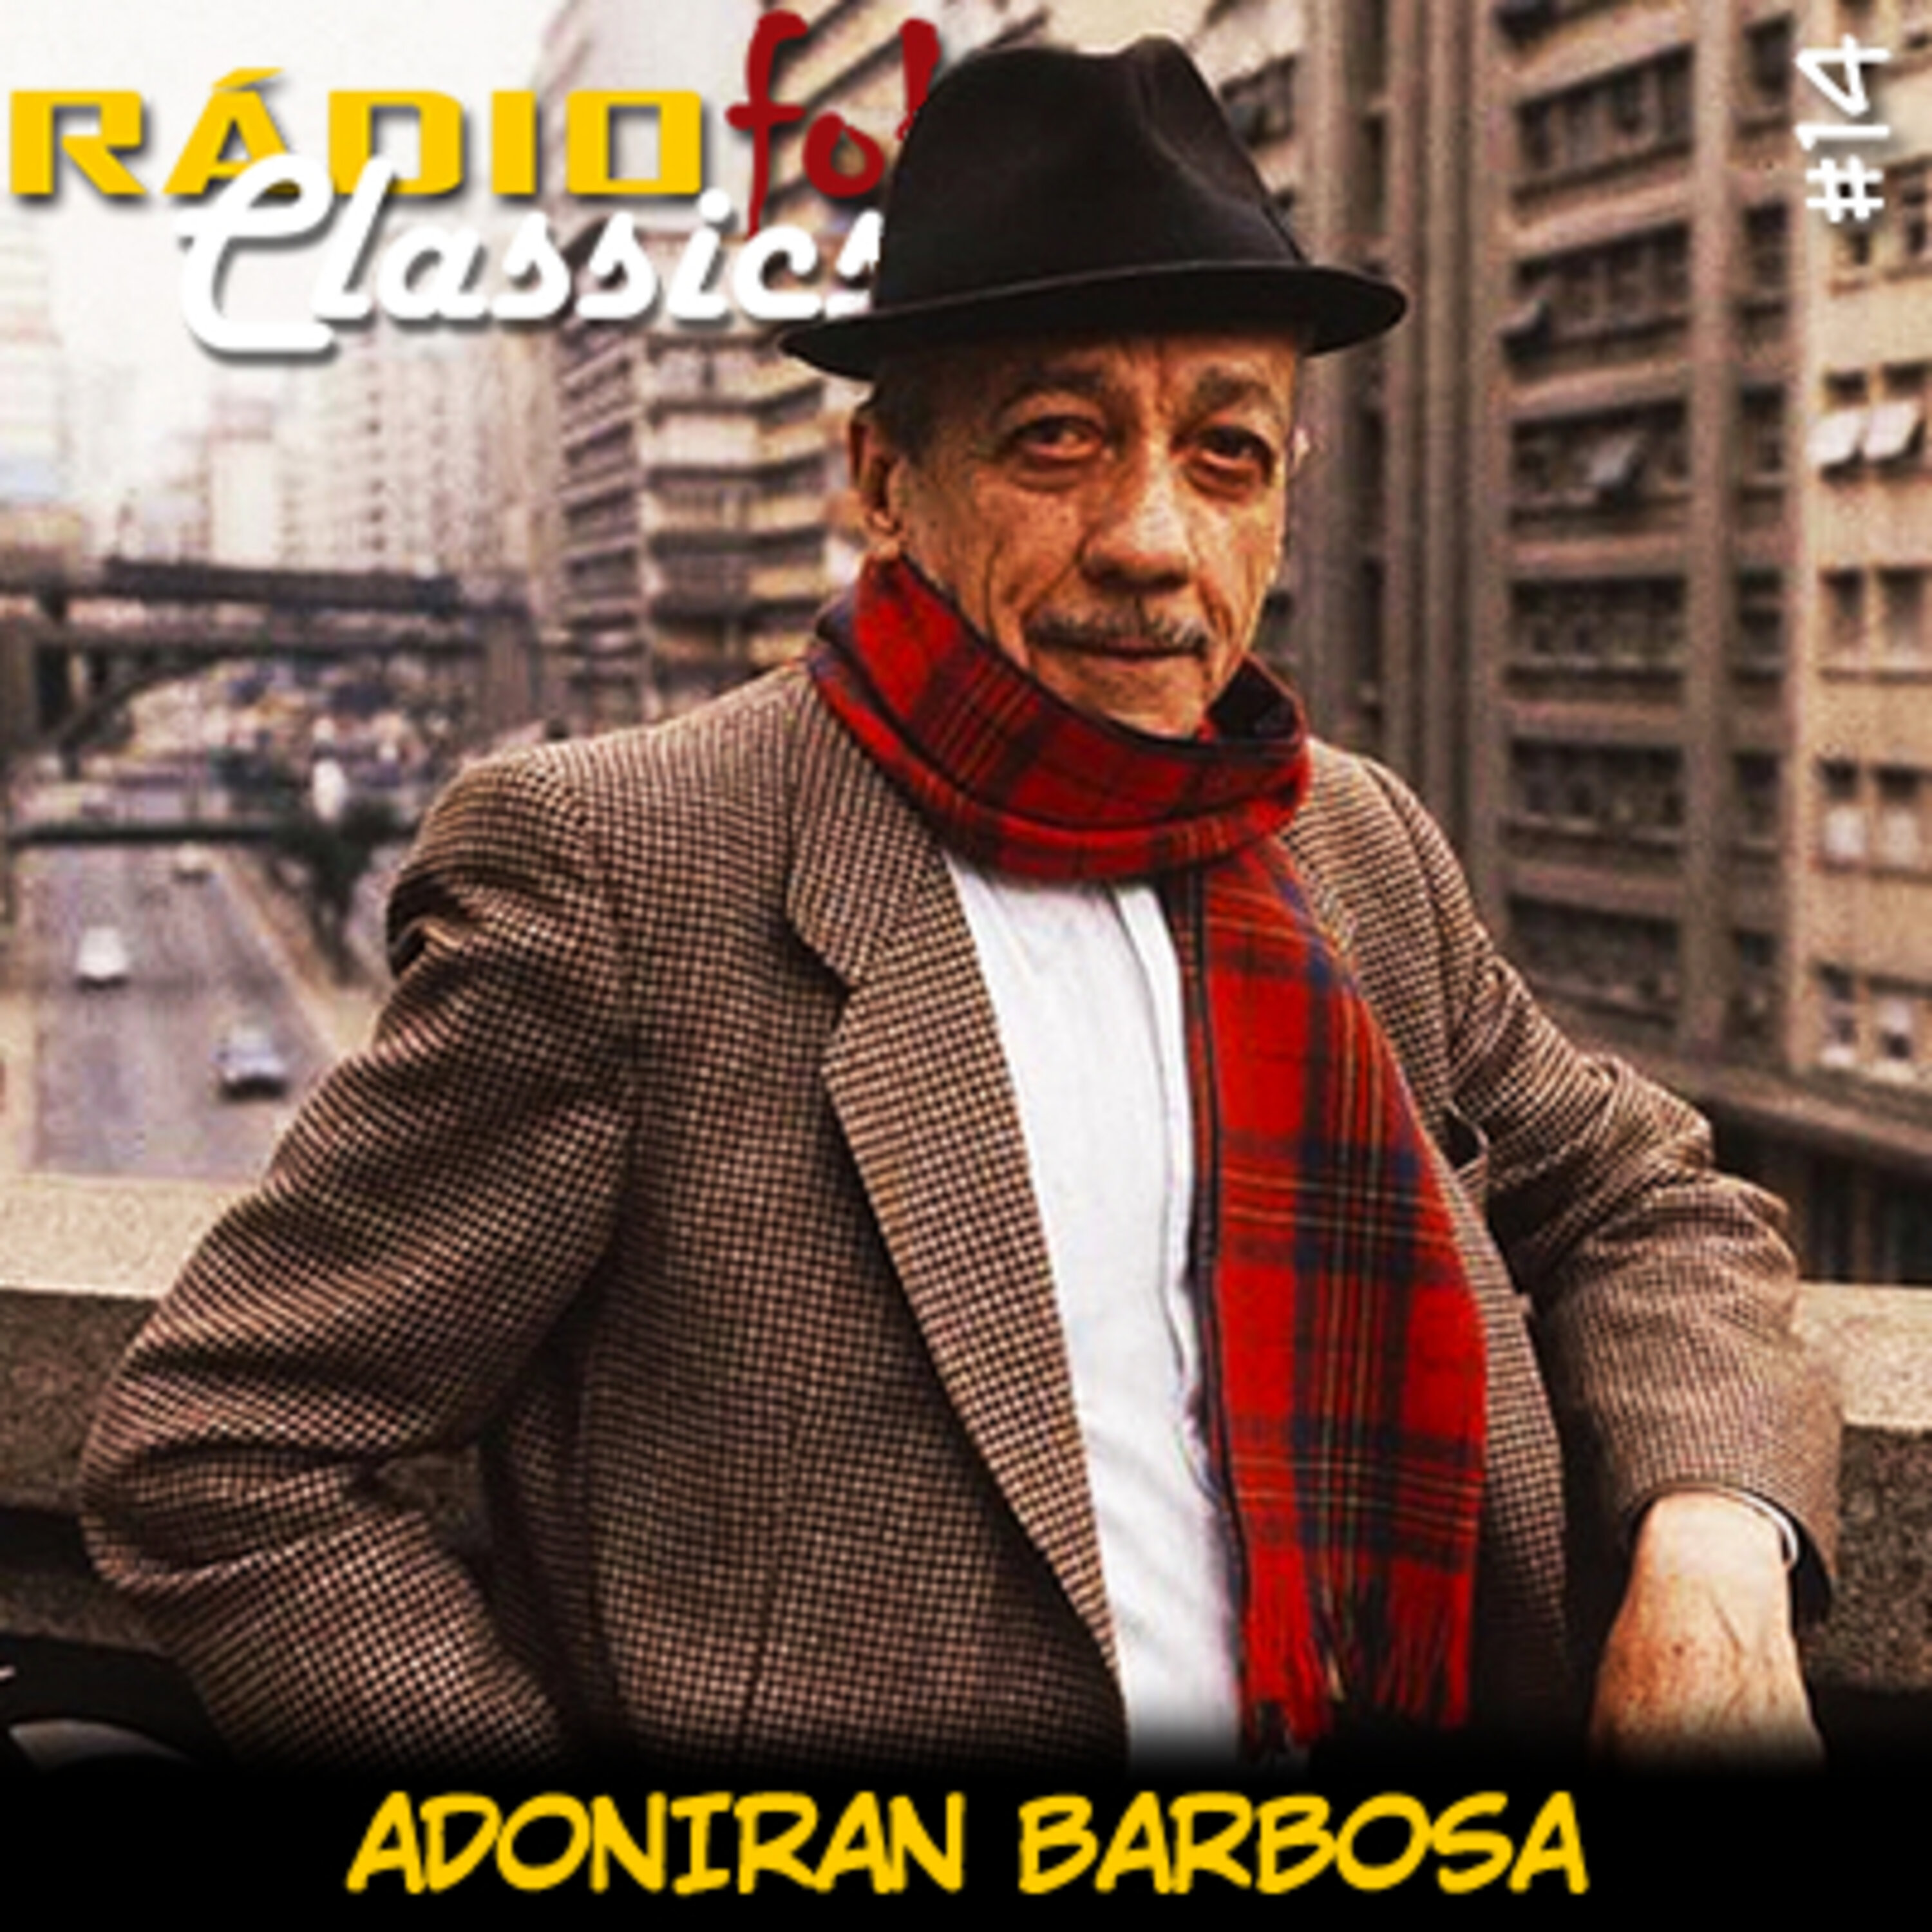 RÁDIOFOBIA Classics #14 – Adoniran Barbosa